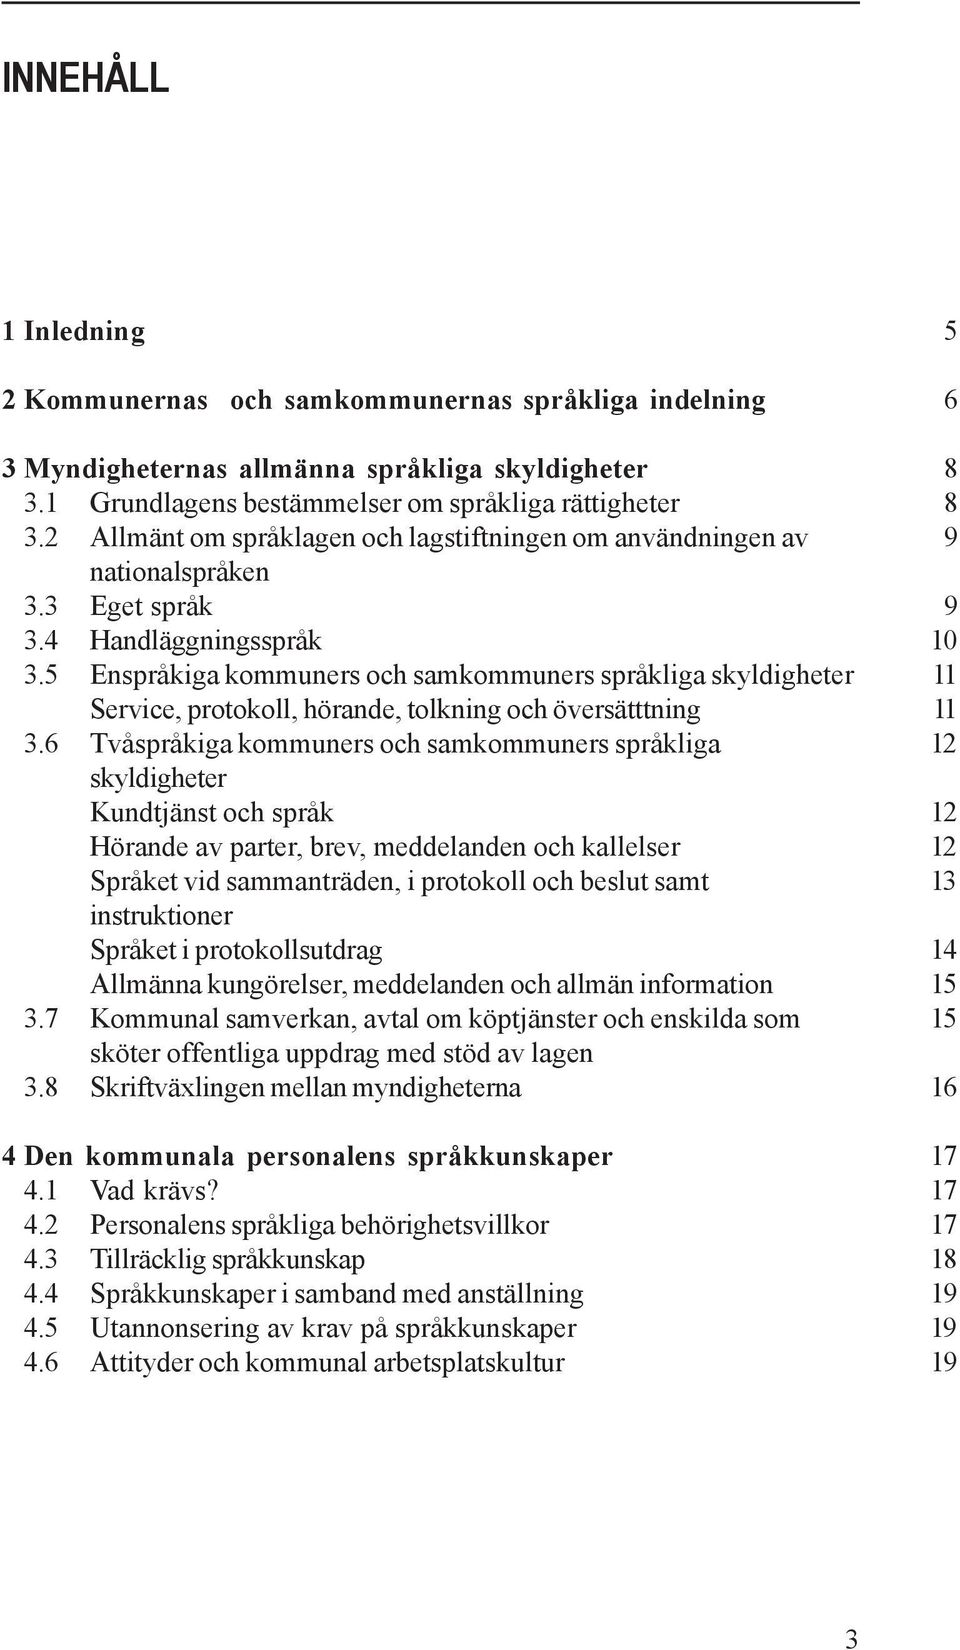 5 Enspråkiga kommuners och samkommuners språkliga skyldigheter 11 Service, protokoll, hörande, tolkning och översätttning 11 3.